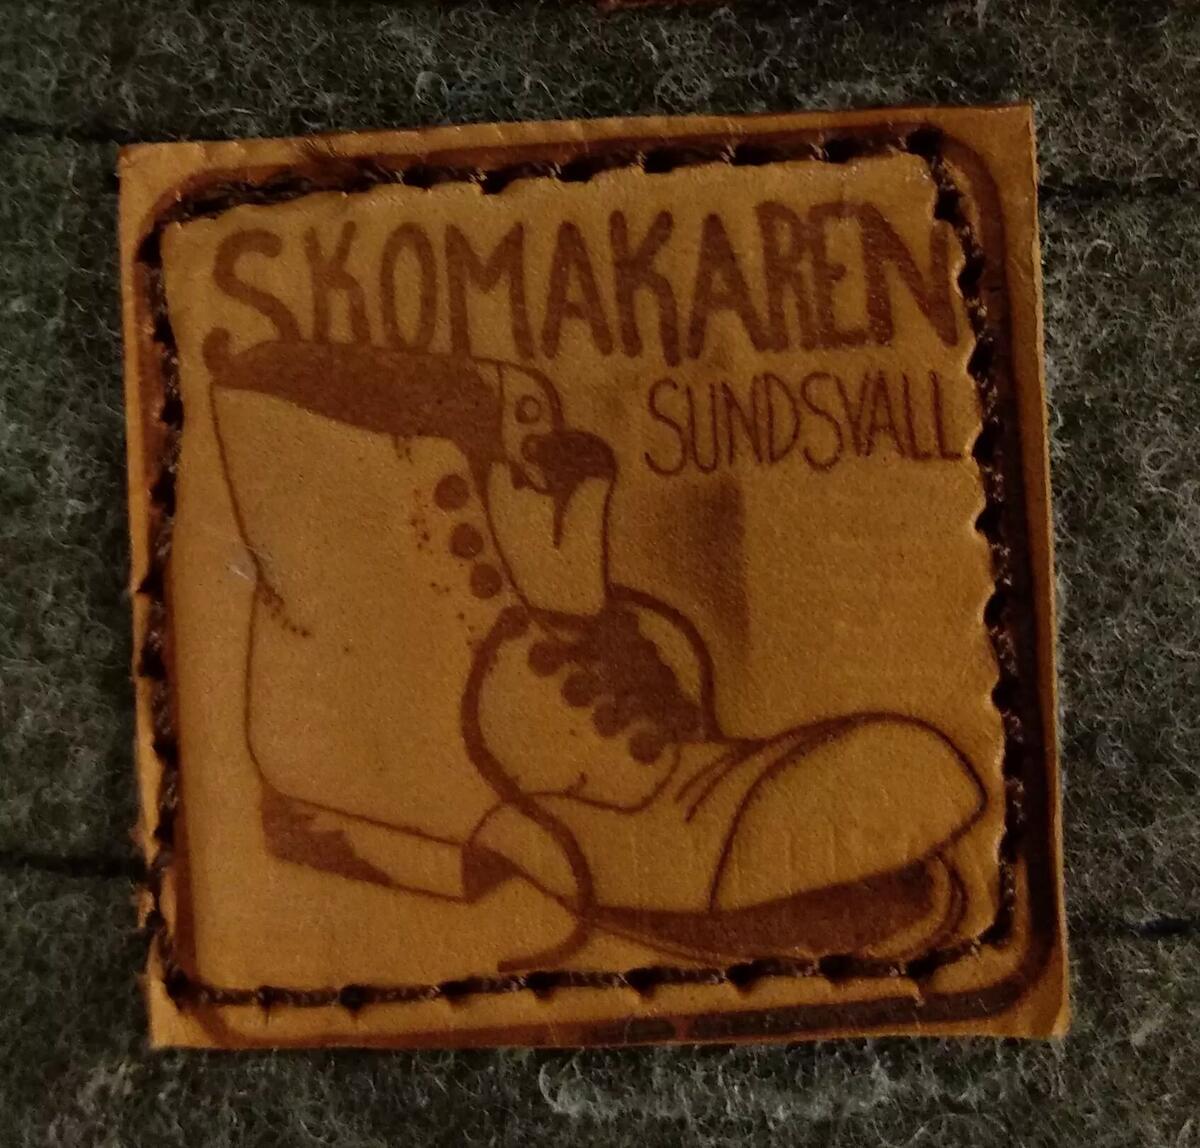 Gåva av Mogens Hansen, Sundsvall. Skomakarmästare. Modellen är från 1940 -50 -talet, då bandy spelades utomhus. " Skomakaren, Sundsvall " på läderbit på varje stövel. Plac: M4ABF2.